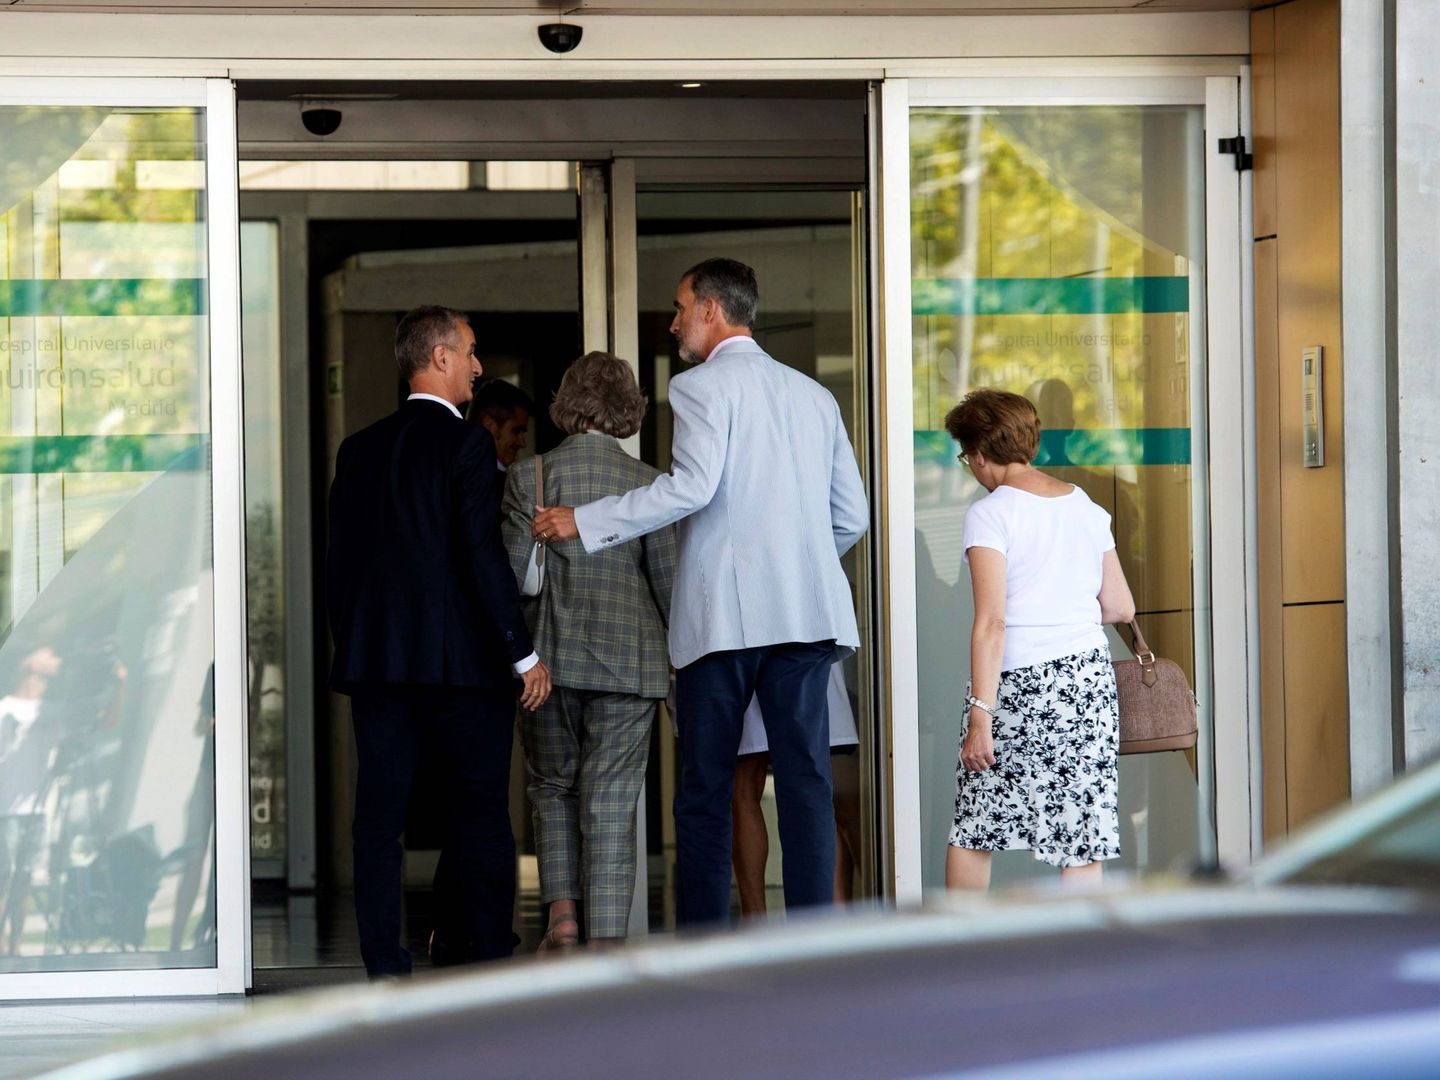  El rey y doña Sofía acuden al hospital donde es intervenido don Juan Carlos. (EFE)